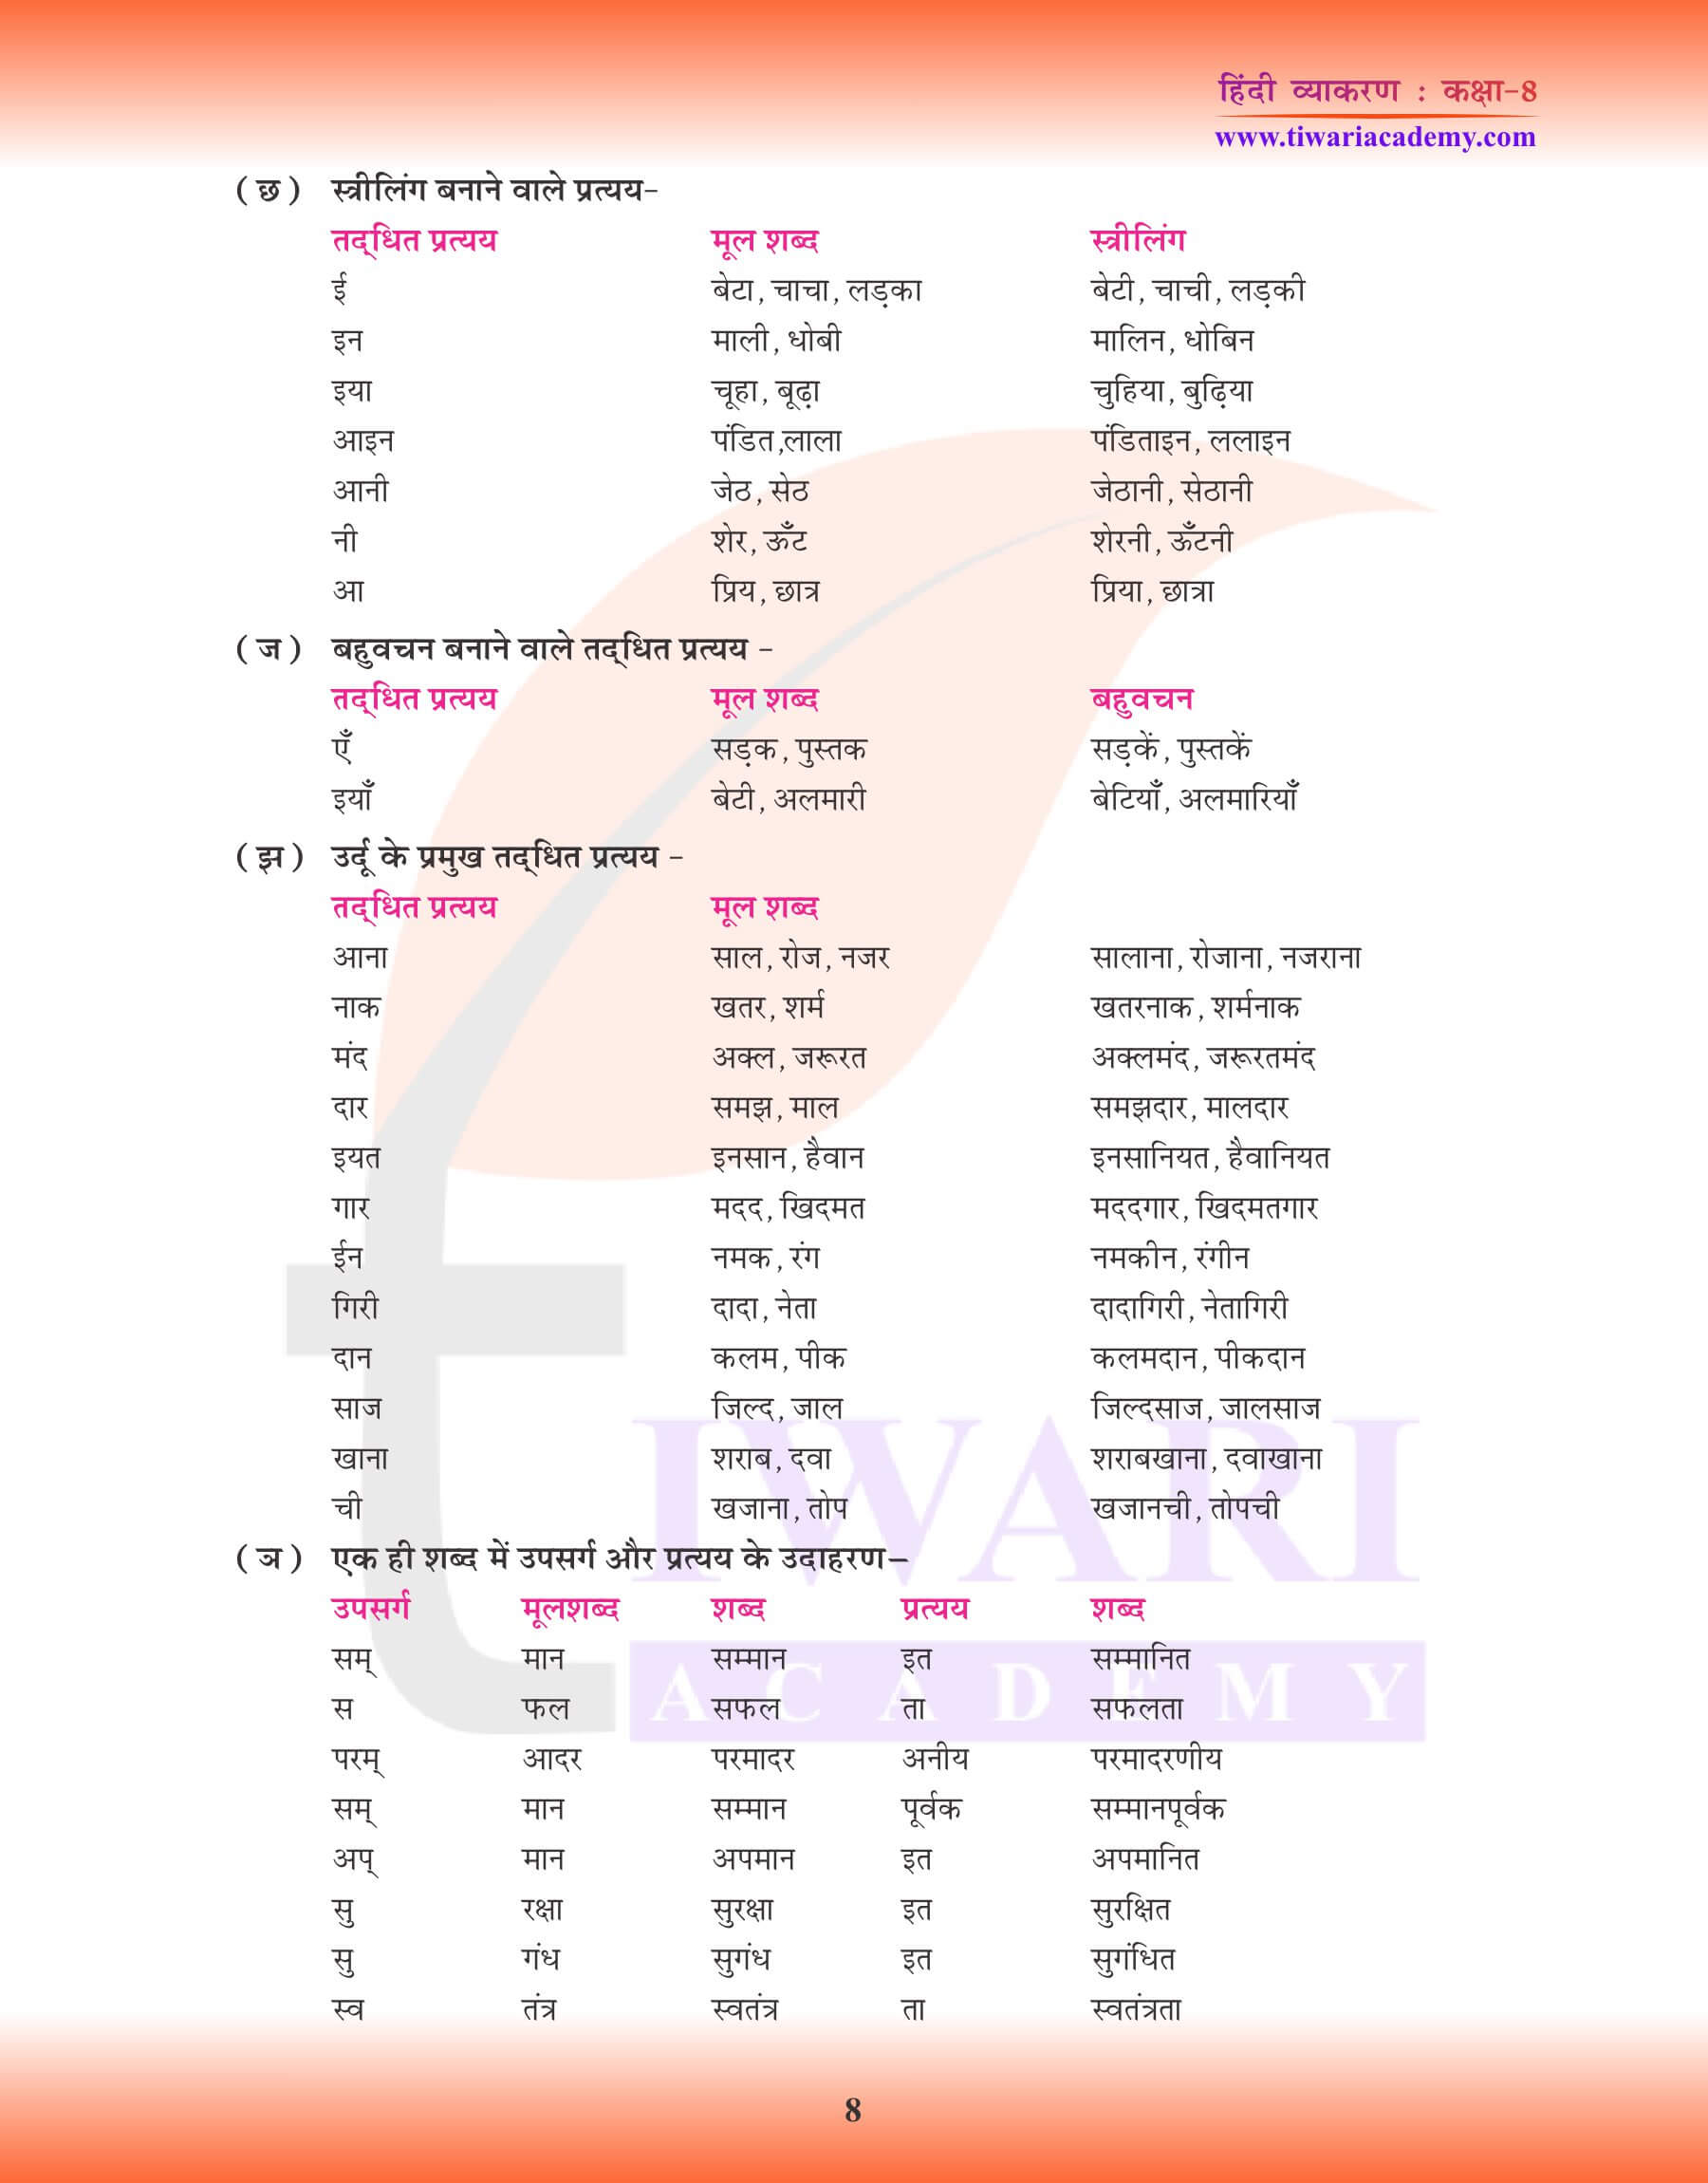 कक्षा 8 हिंदी व्याकरण में प्रत्यय के उदाहरण